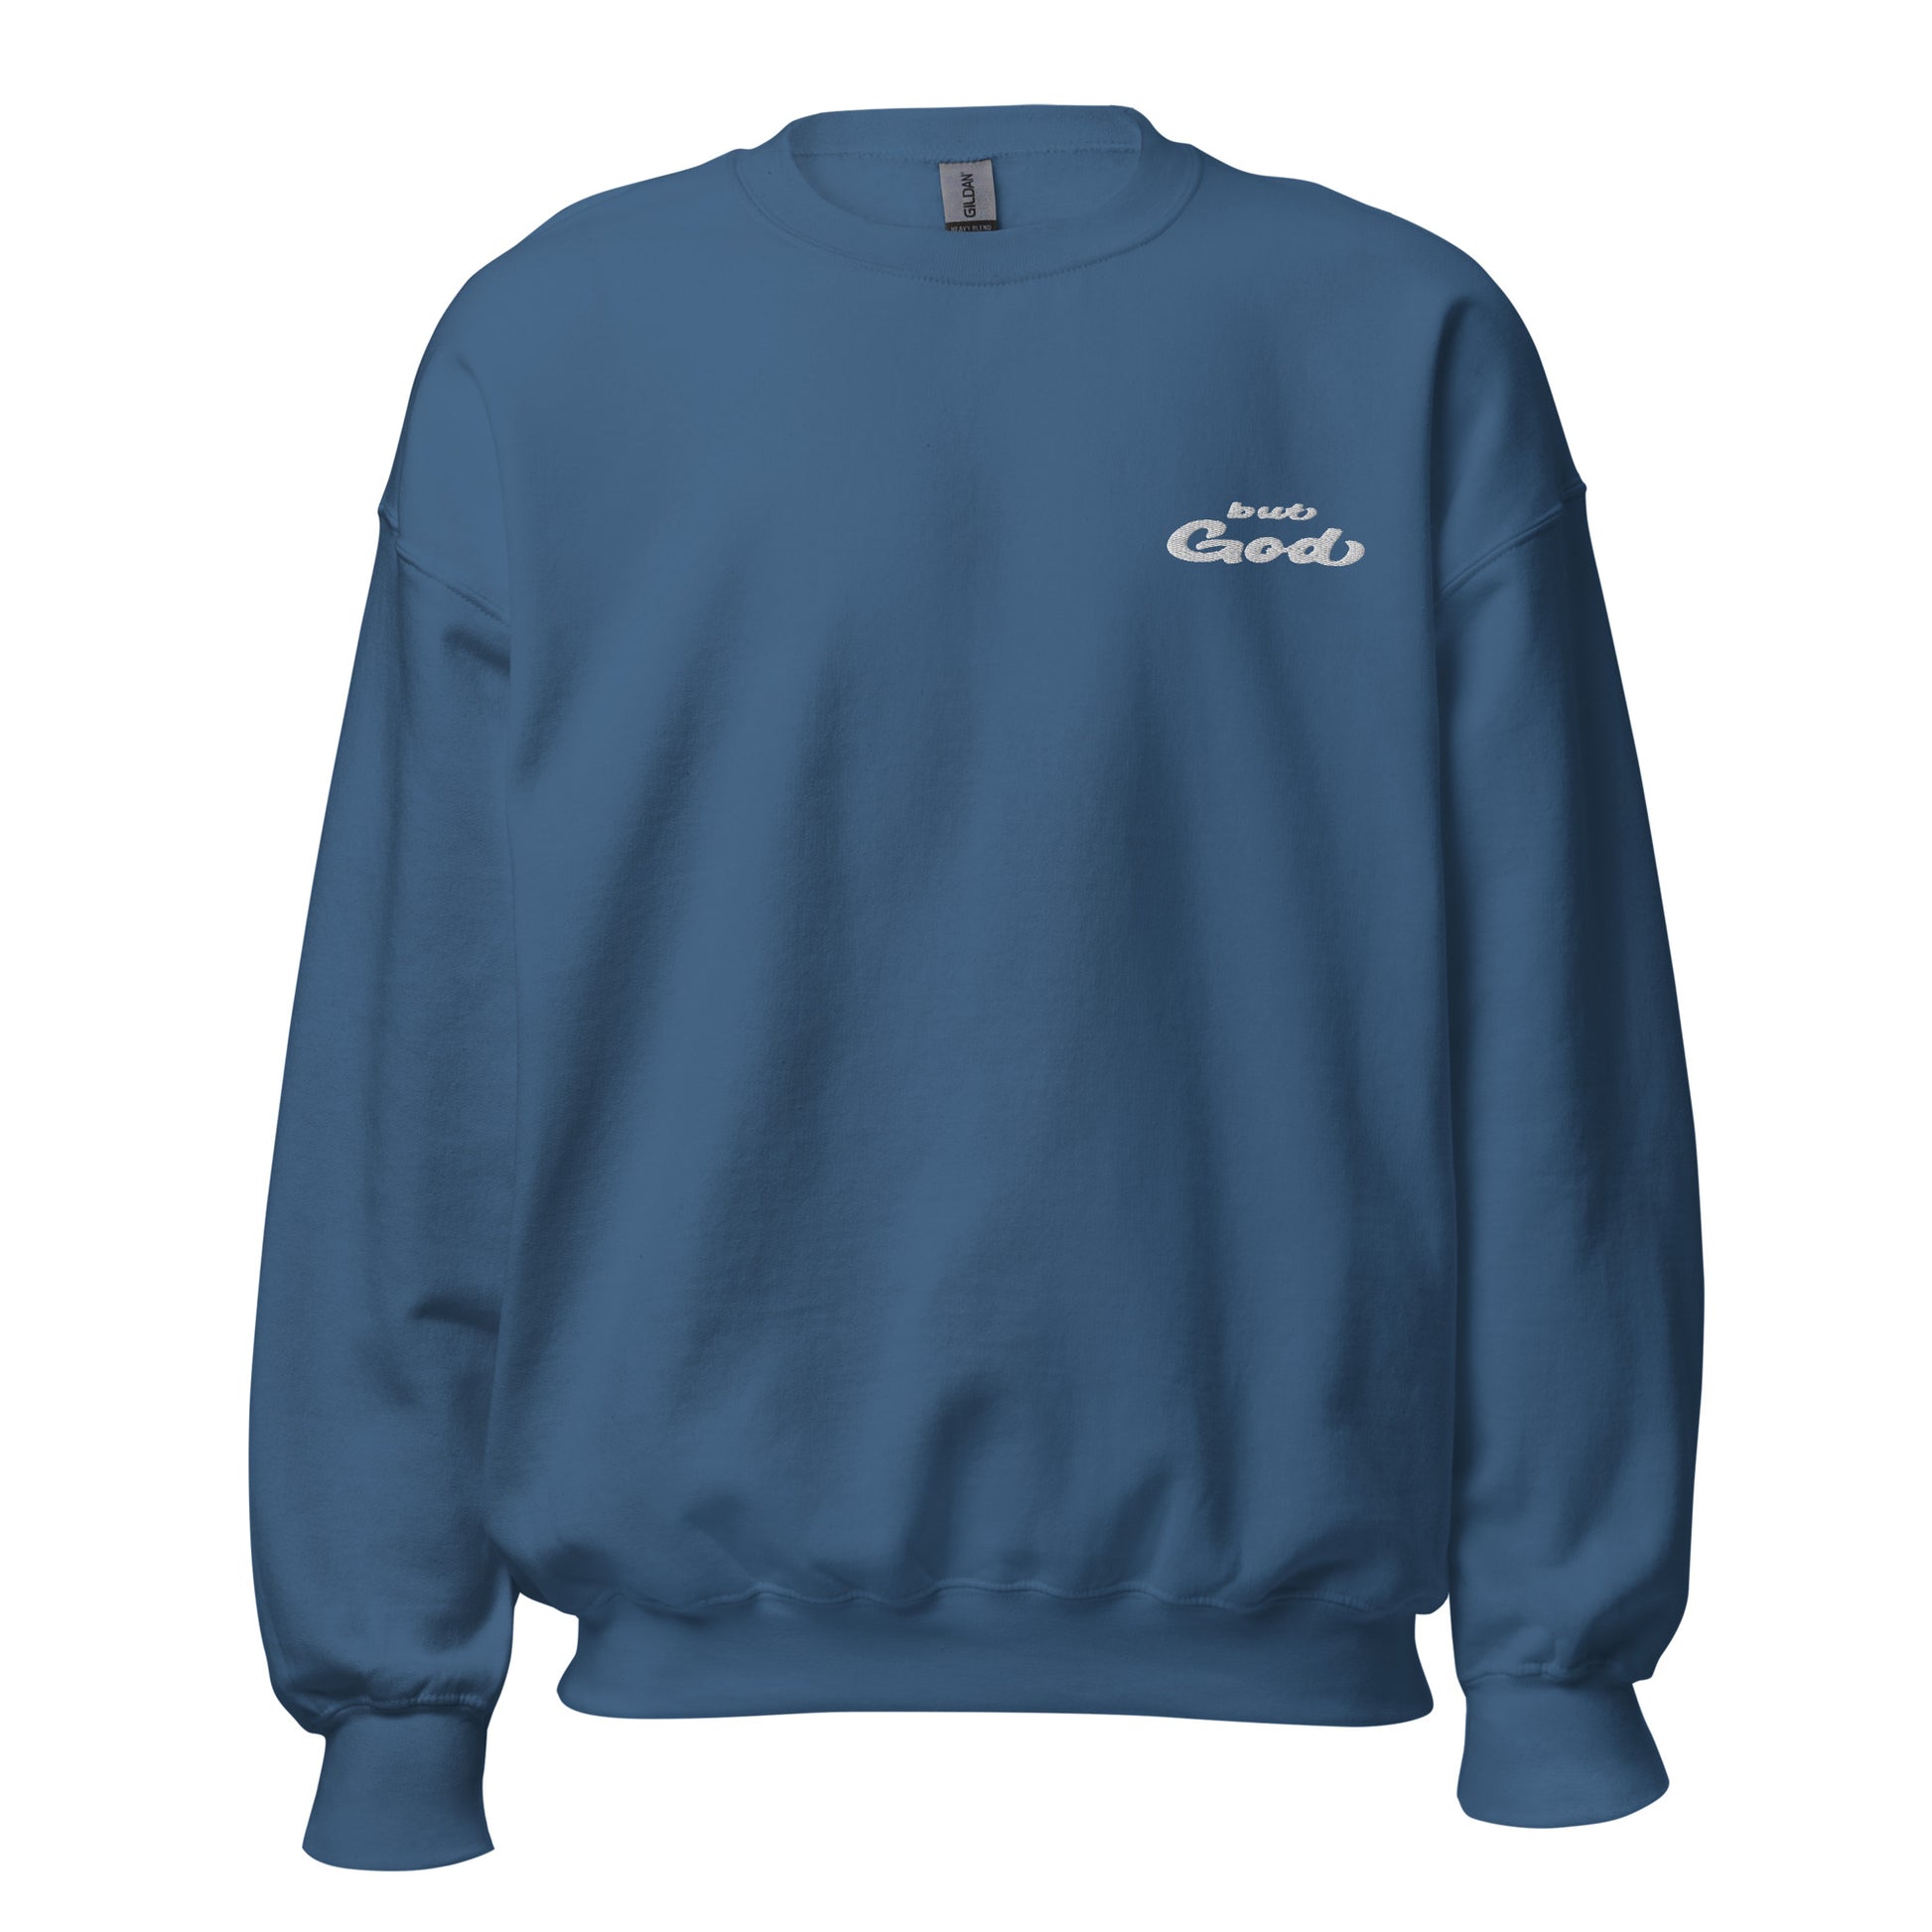 But God Embroidered Unisex Sweatshirt indigo blue